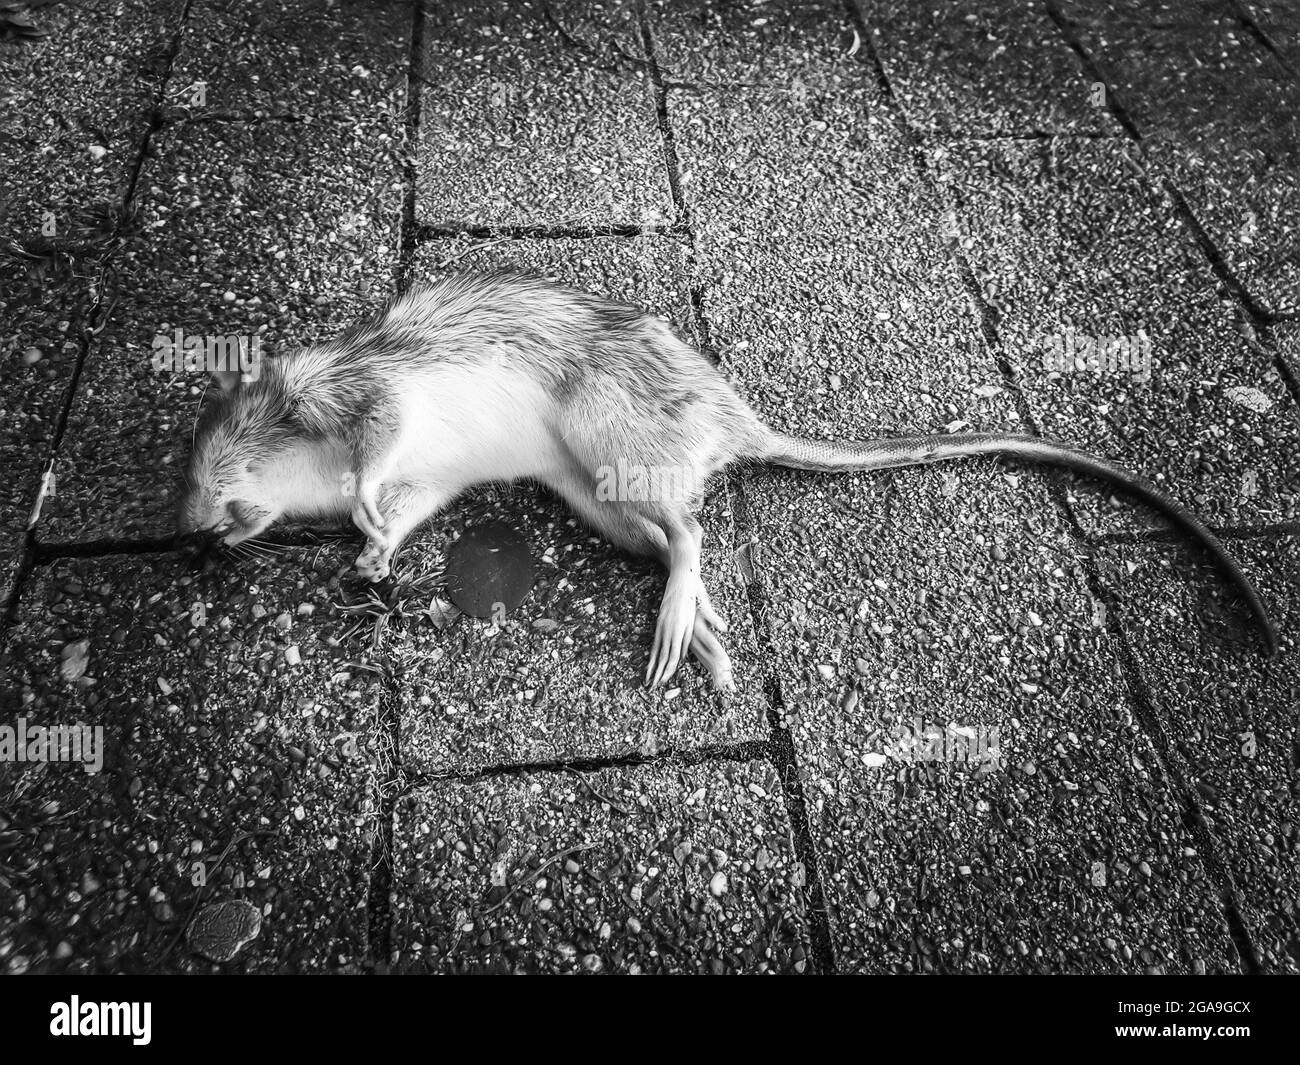 Dead rat on the street Stock Photo